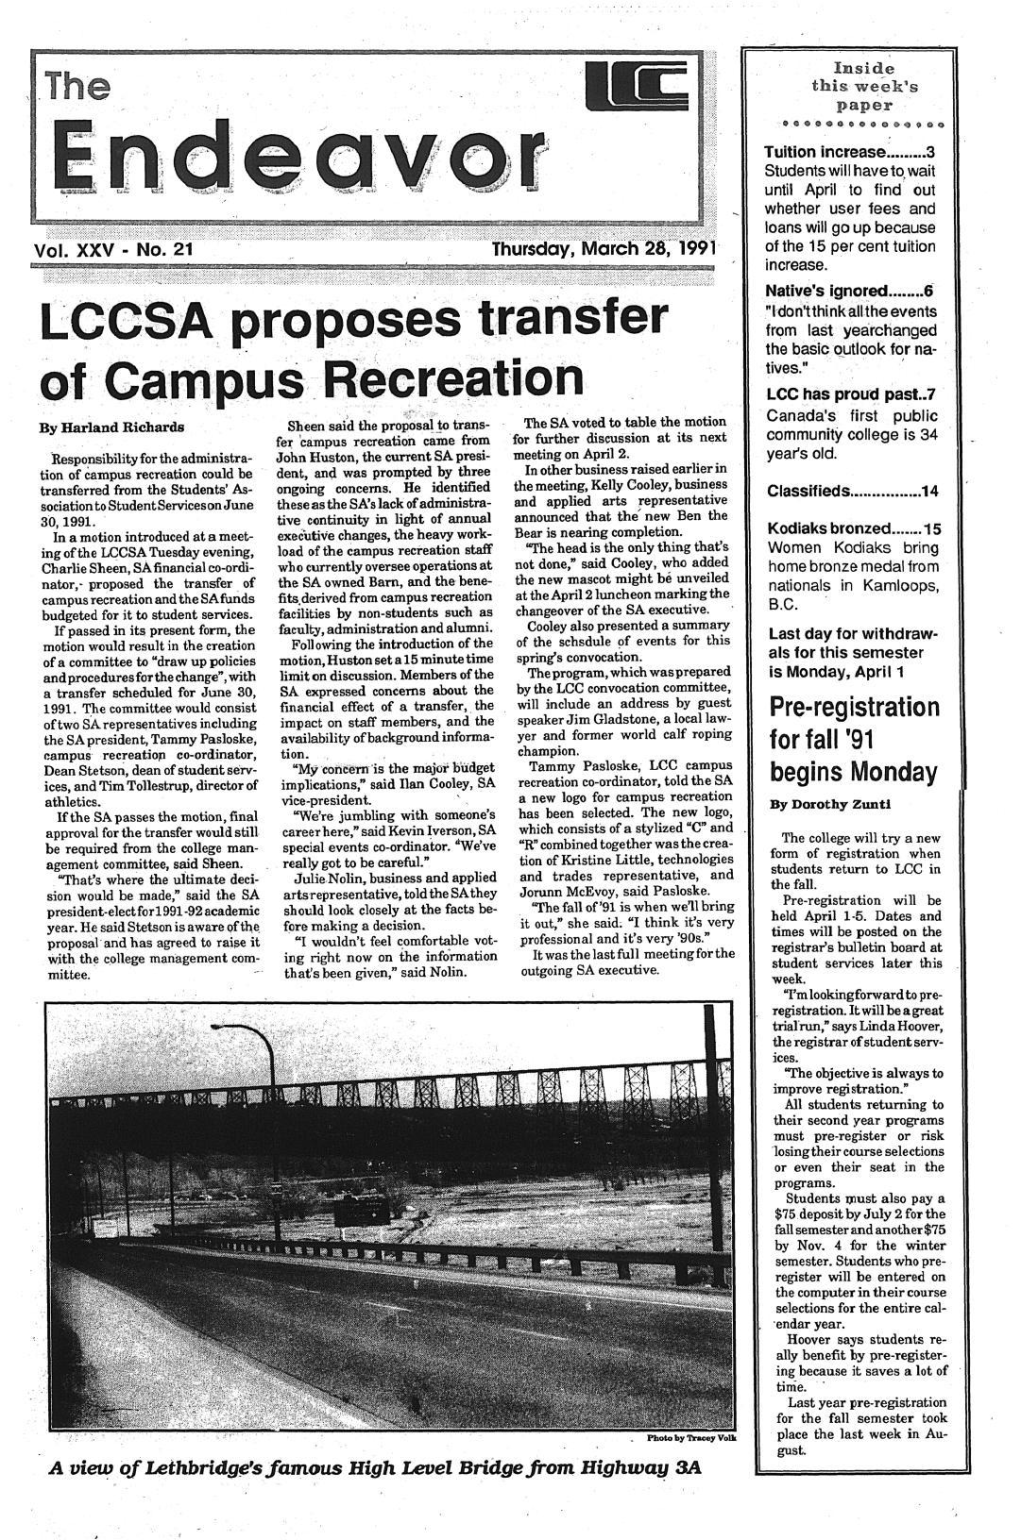 LCCSA Proposes Transfer of Campus Recreatioii